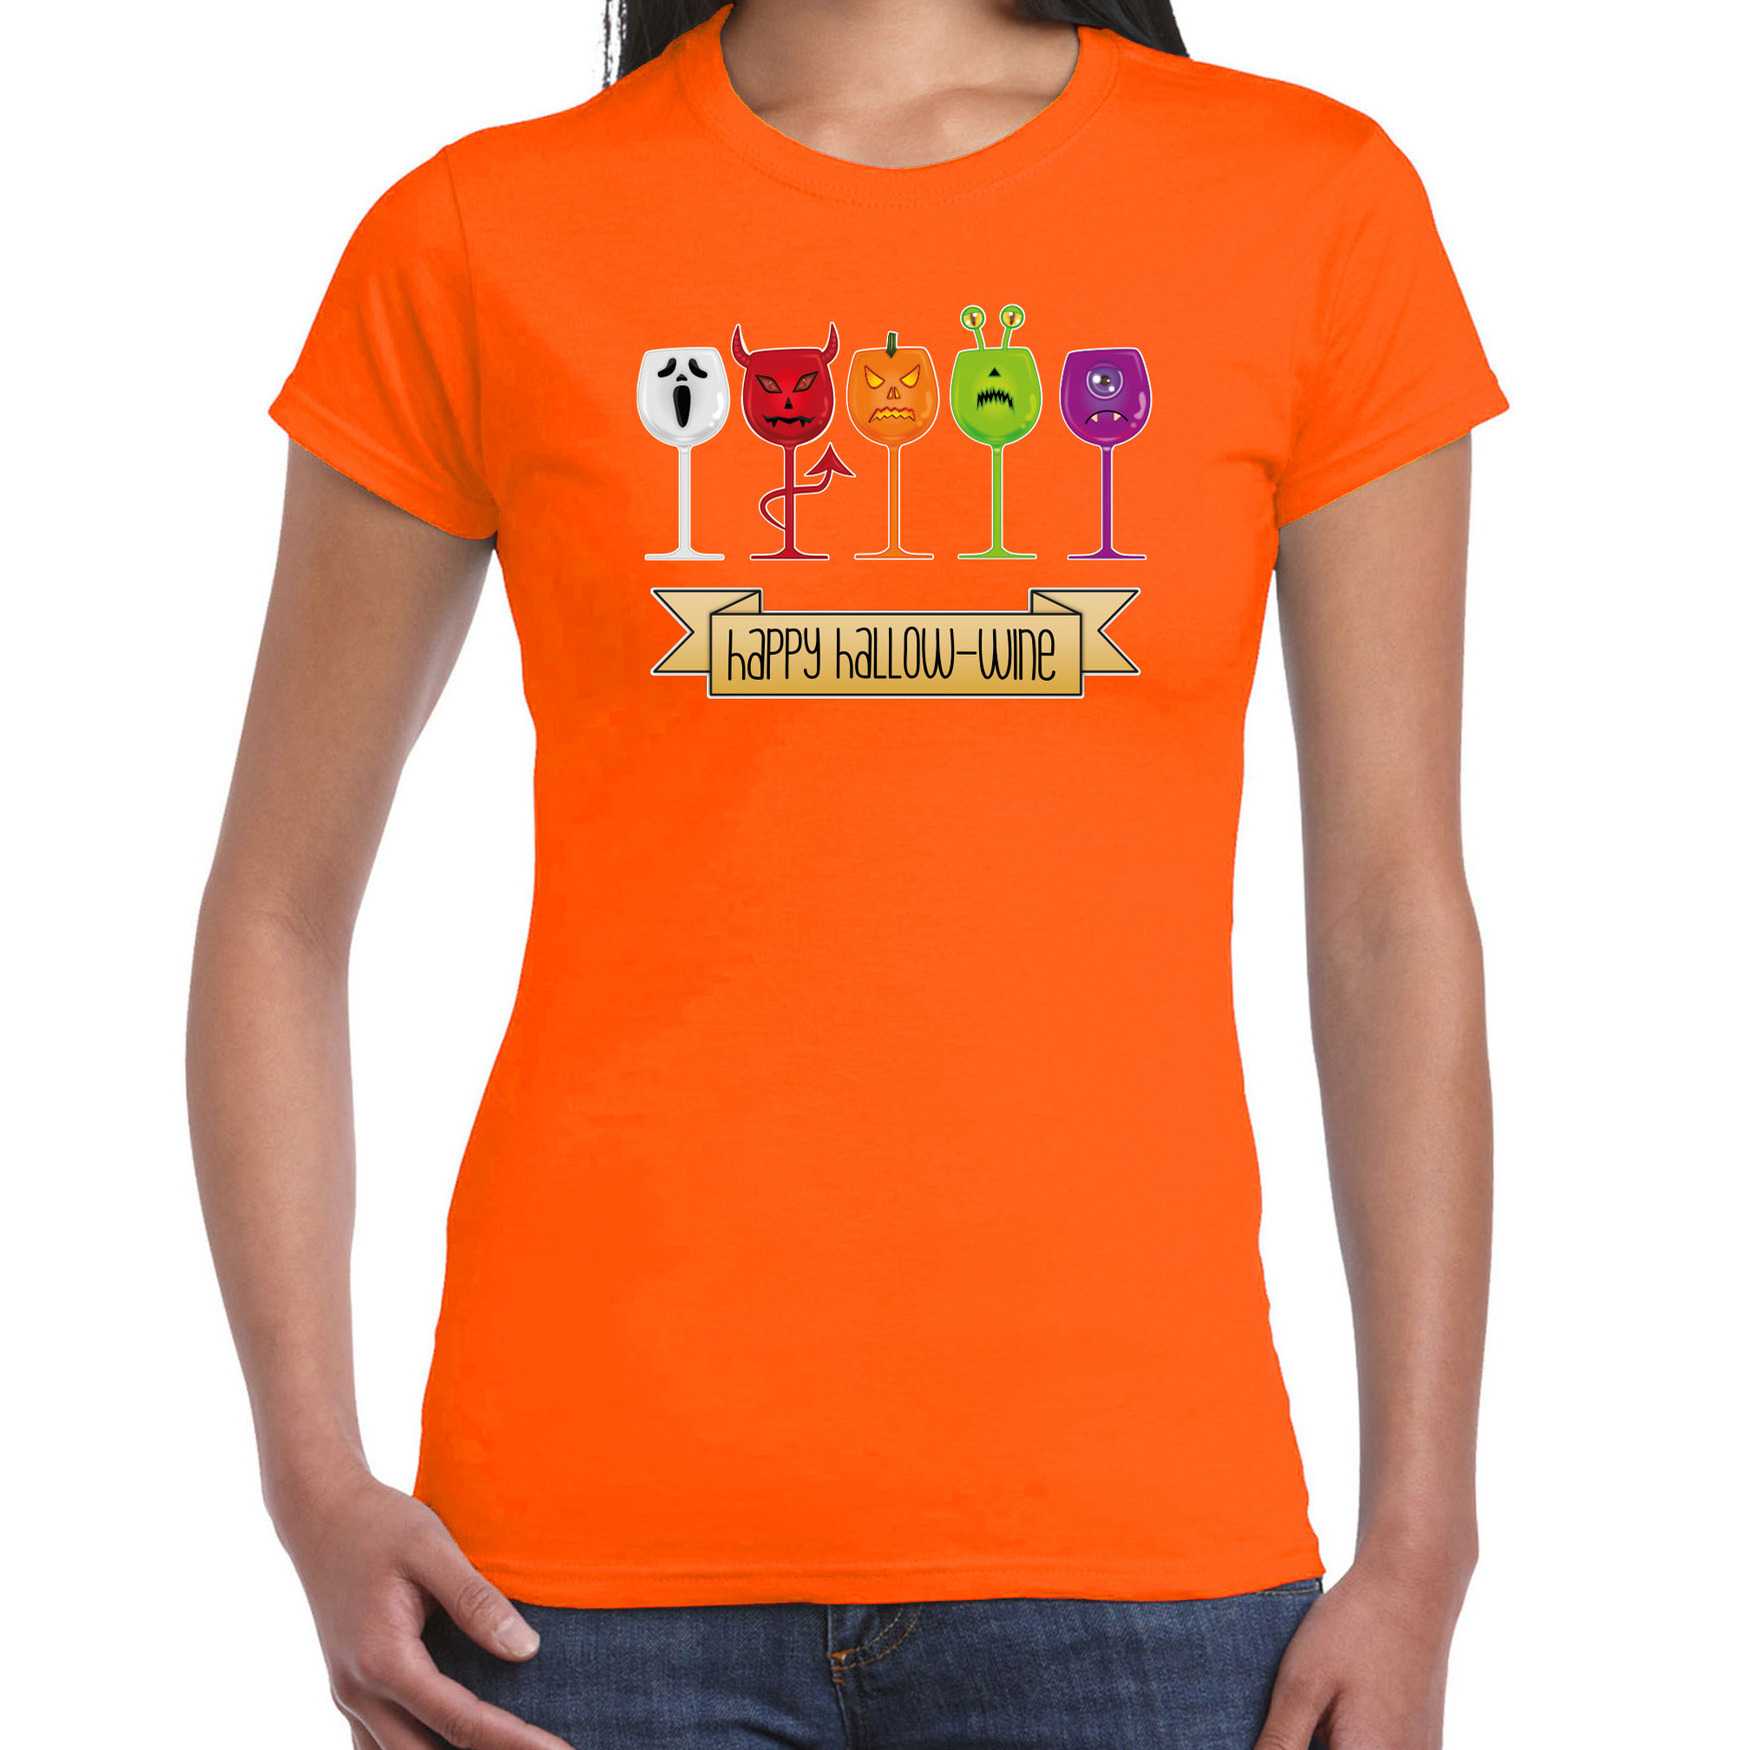 Halloween verkleed t-shirt dames wijn monster oranje themafeest outfit